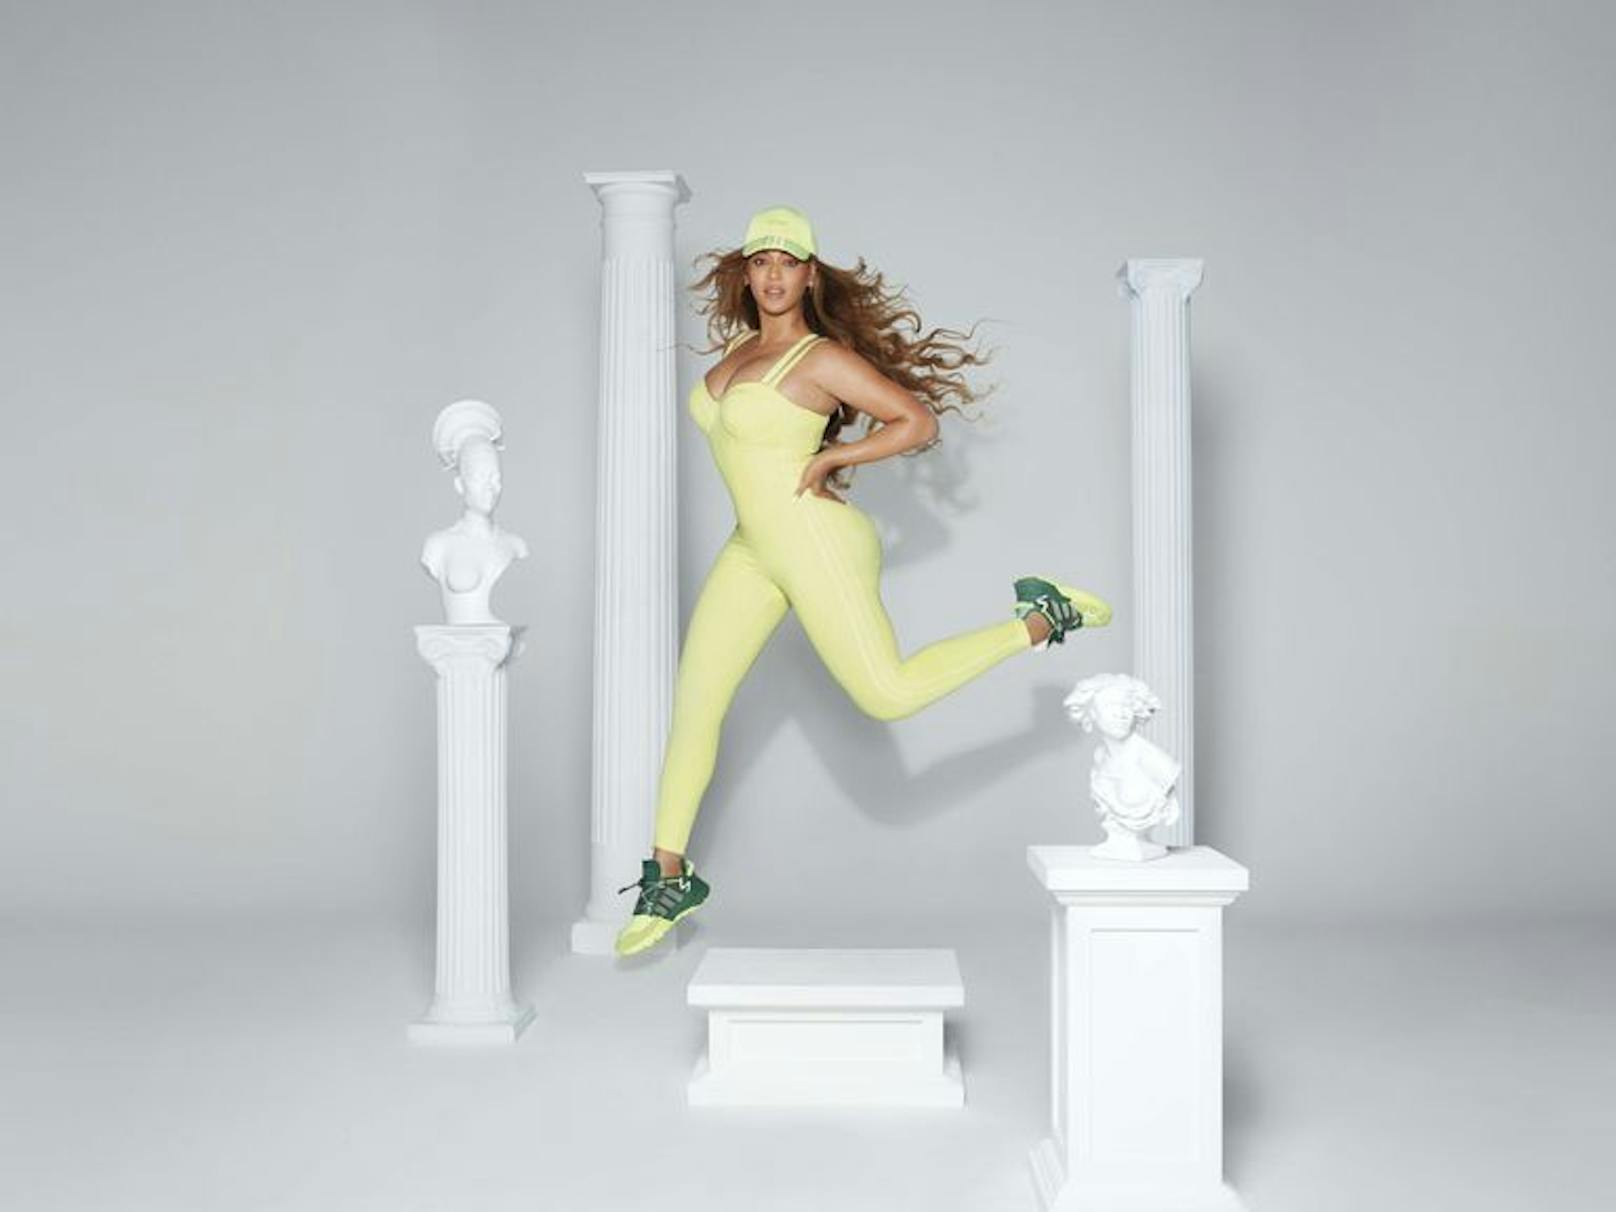 Die neue Adidas-Kollektion von Beyoncé's Modemarke Ivy Park ist draußen - und zum Teil schon ausverkauft.